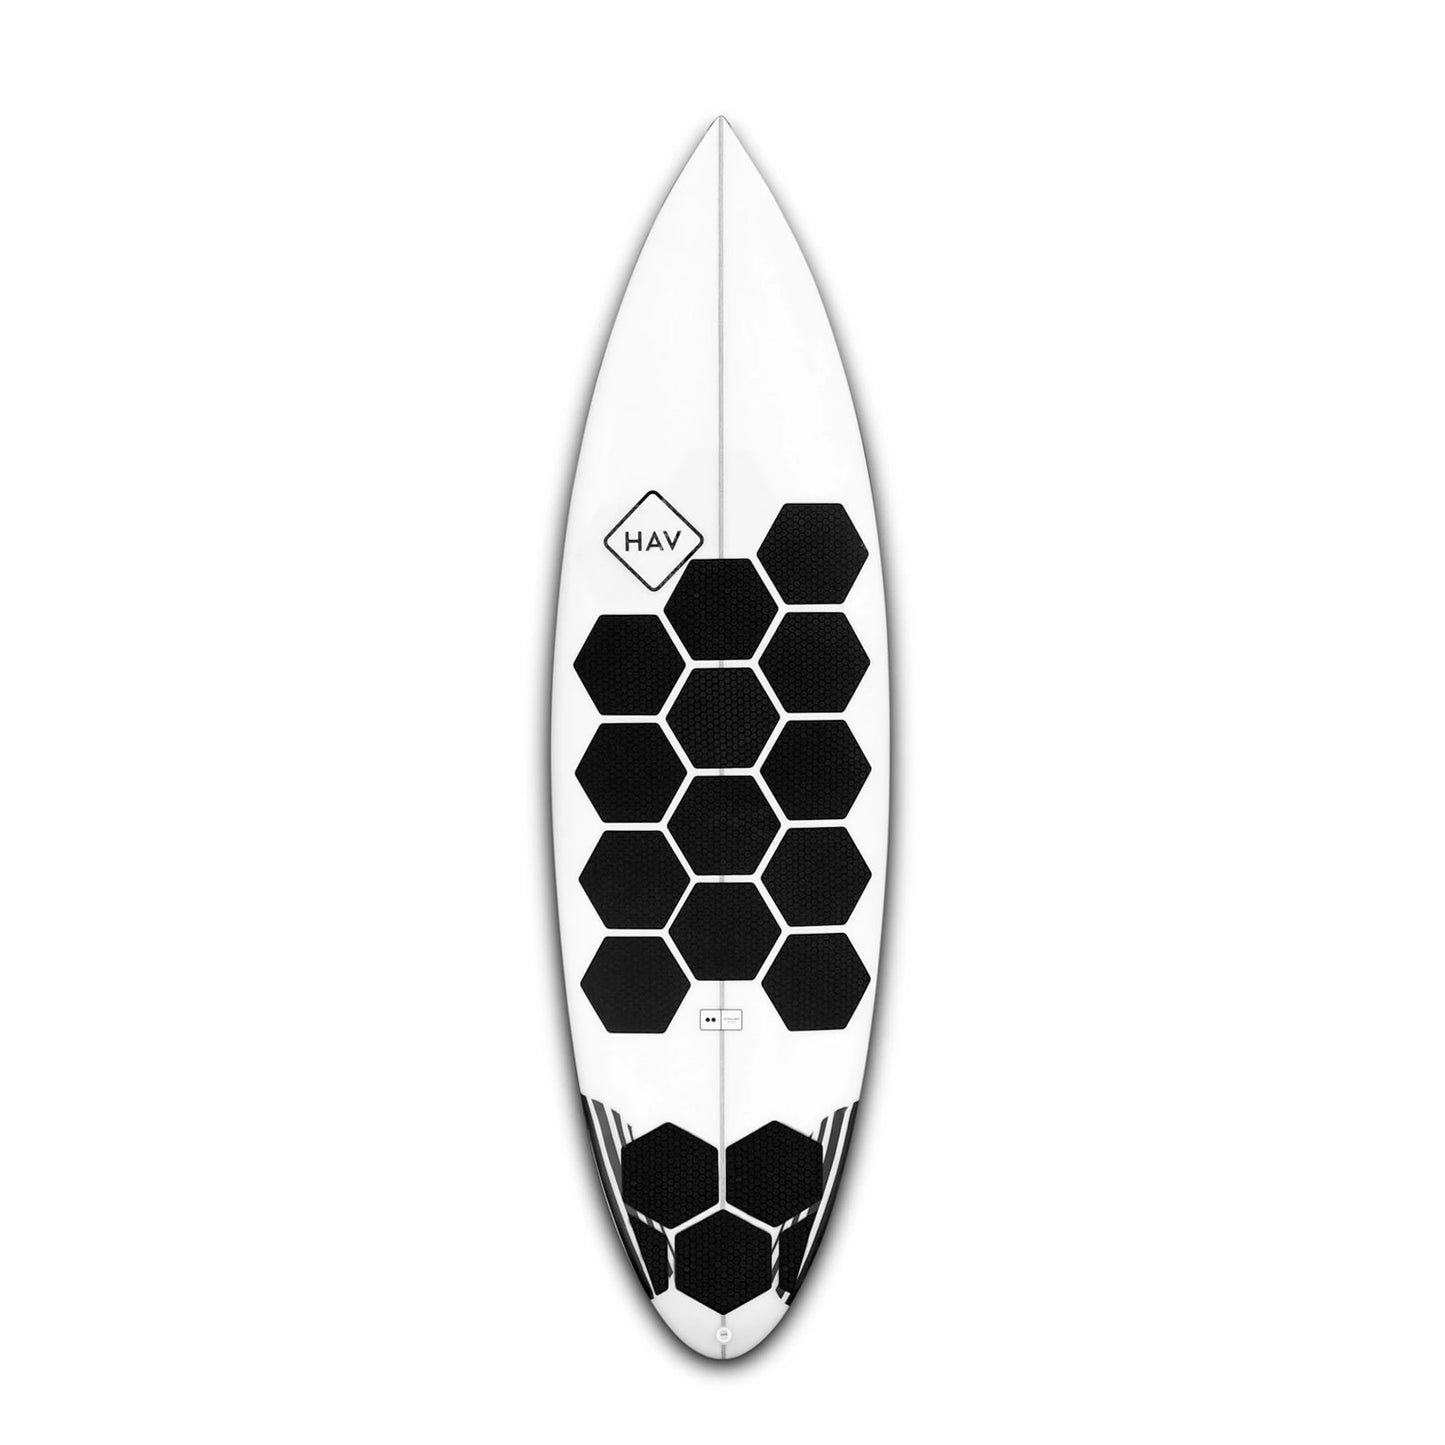 Installierte RSPro Hexa Traction Black Edition auf einen Surfboard vor weißem Hintergrund.